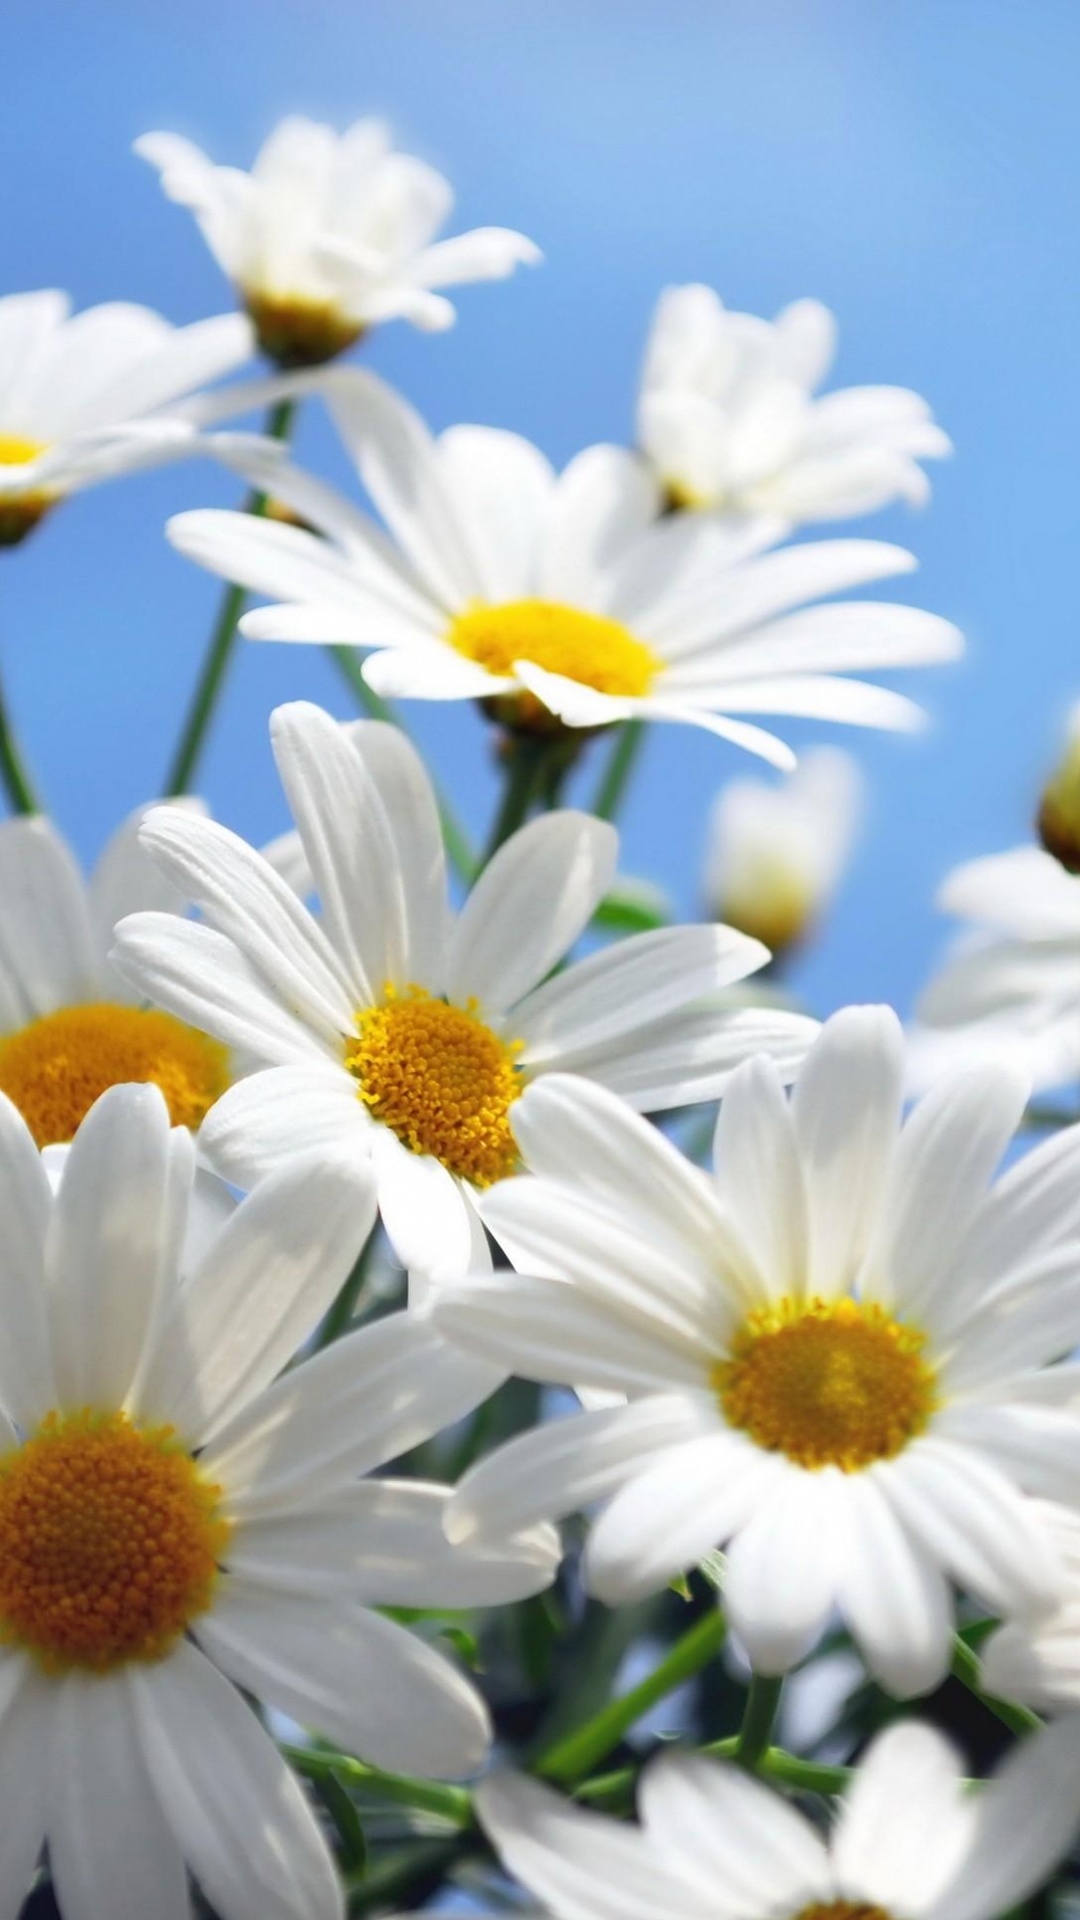 共同的菊花, Oxeye菊花, 玛格丽的菊花, Daisy的家庭, 白色 壁纸 1080x1920 允许